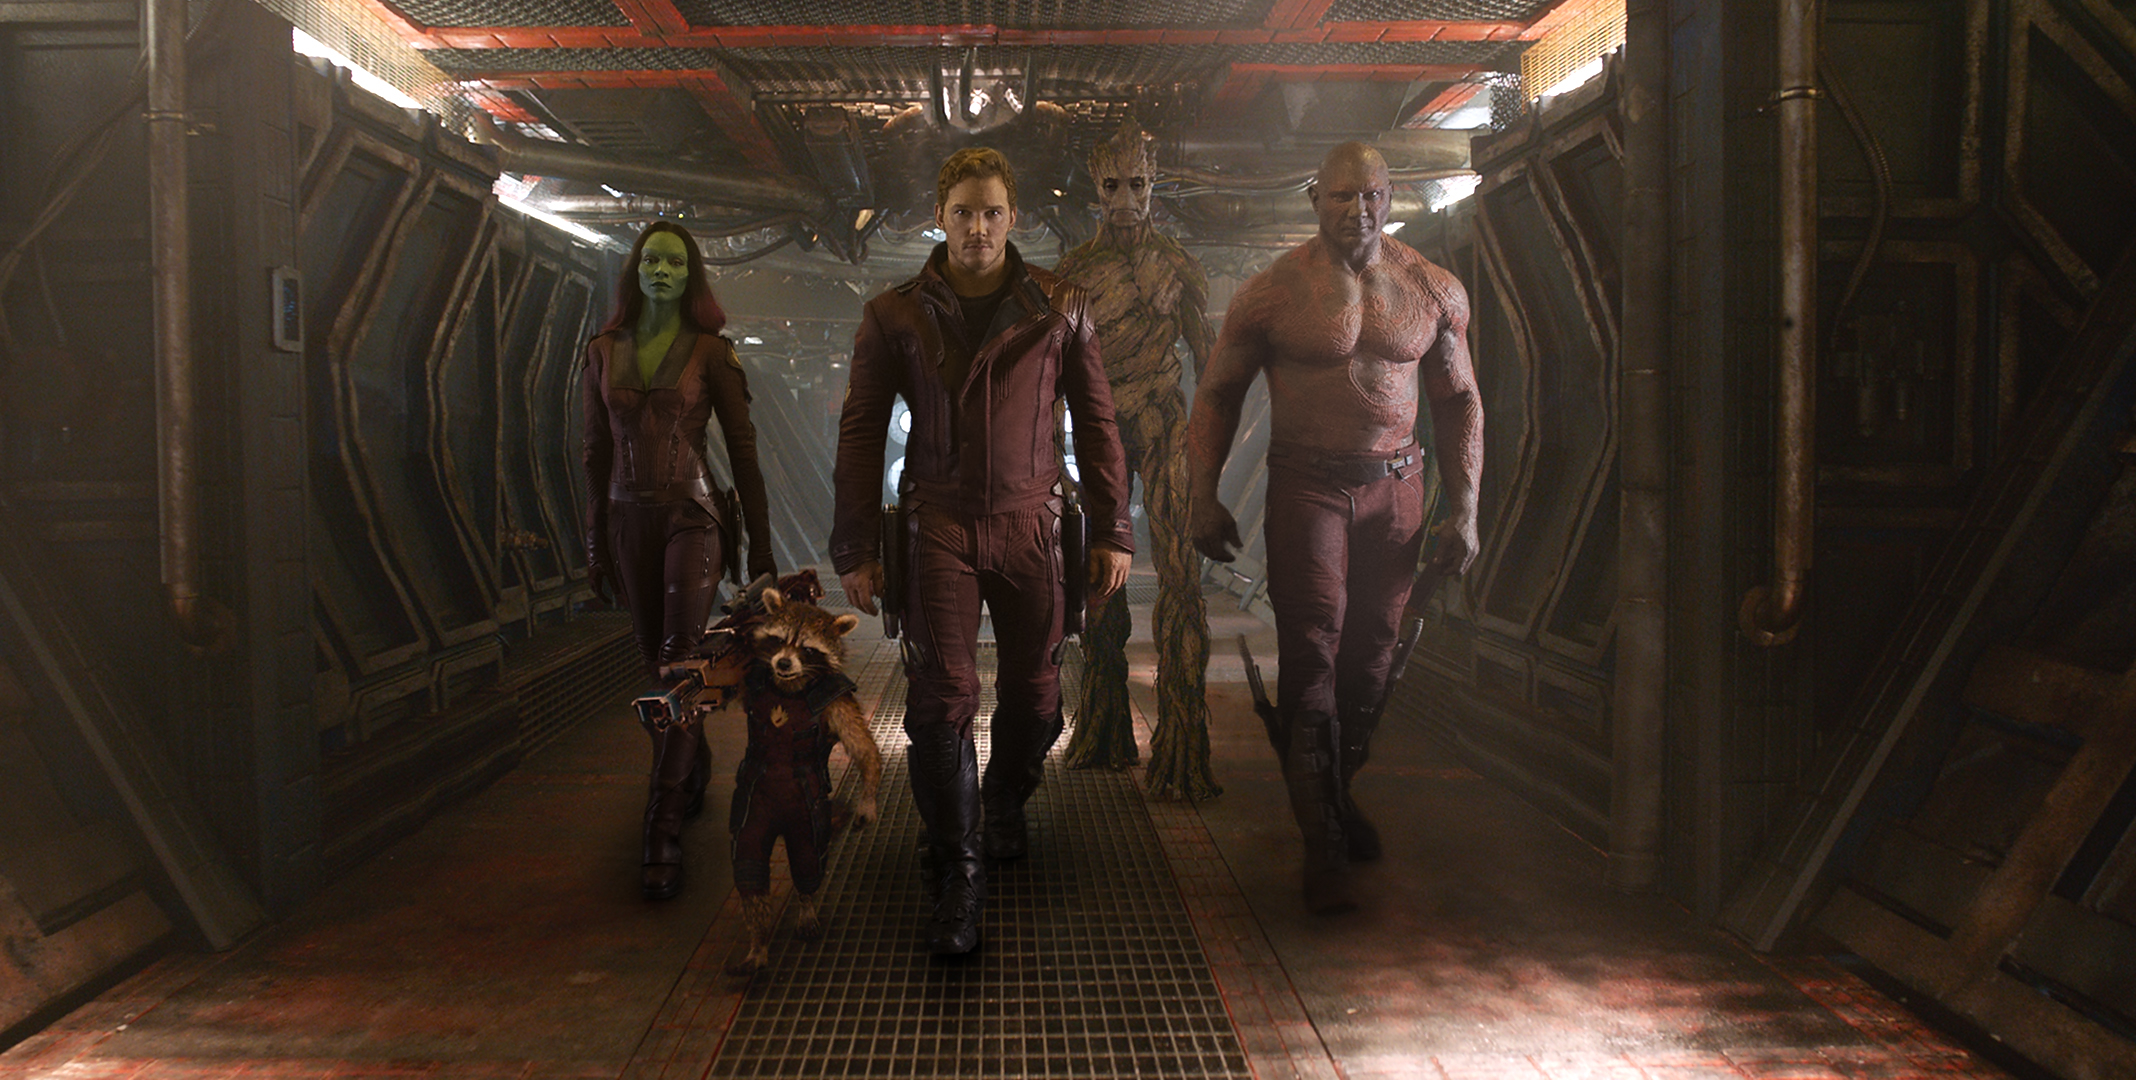 Guardians-of-the-Galaxy-Official-Poster-Banner-PROMO-PHOTOS-STILL-18FEVEREIRO2014-03